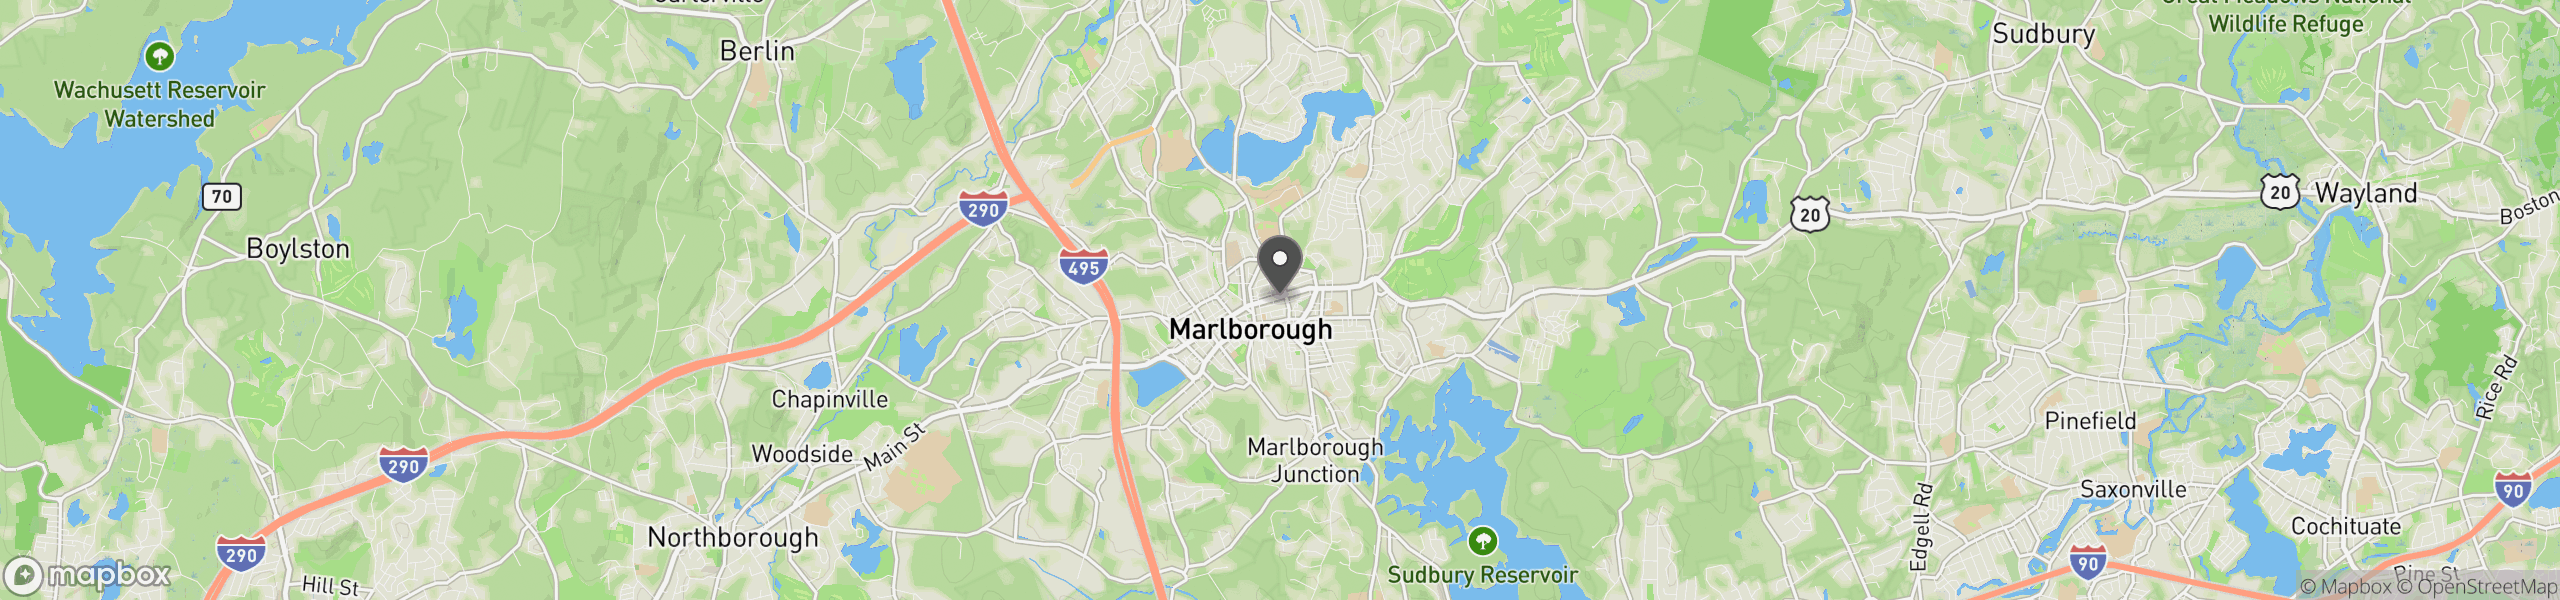 Marlborough, MA 01752